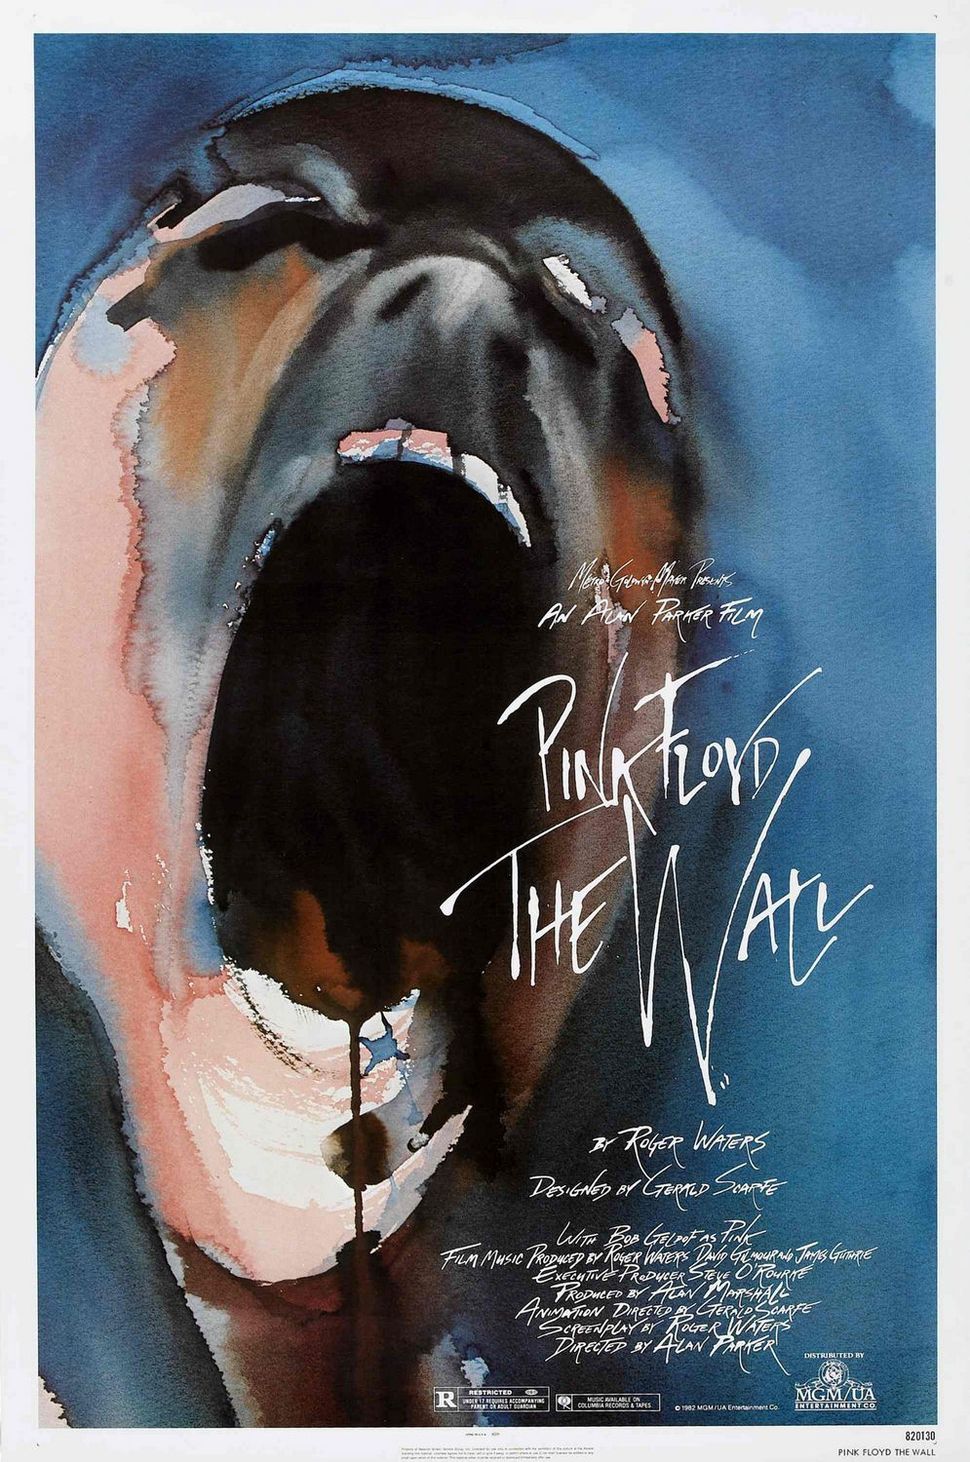 1982년 핑크 플로이드는 영화 감독 앨런 파커와 함께 자신들의 실험적인 음반을 한 편의 영화 <핑크 플로이드 더 월(Pink Floyd: The Wall)>로 옮겼다. 영화 포스터 갈무리.